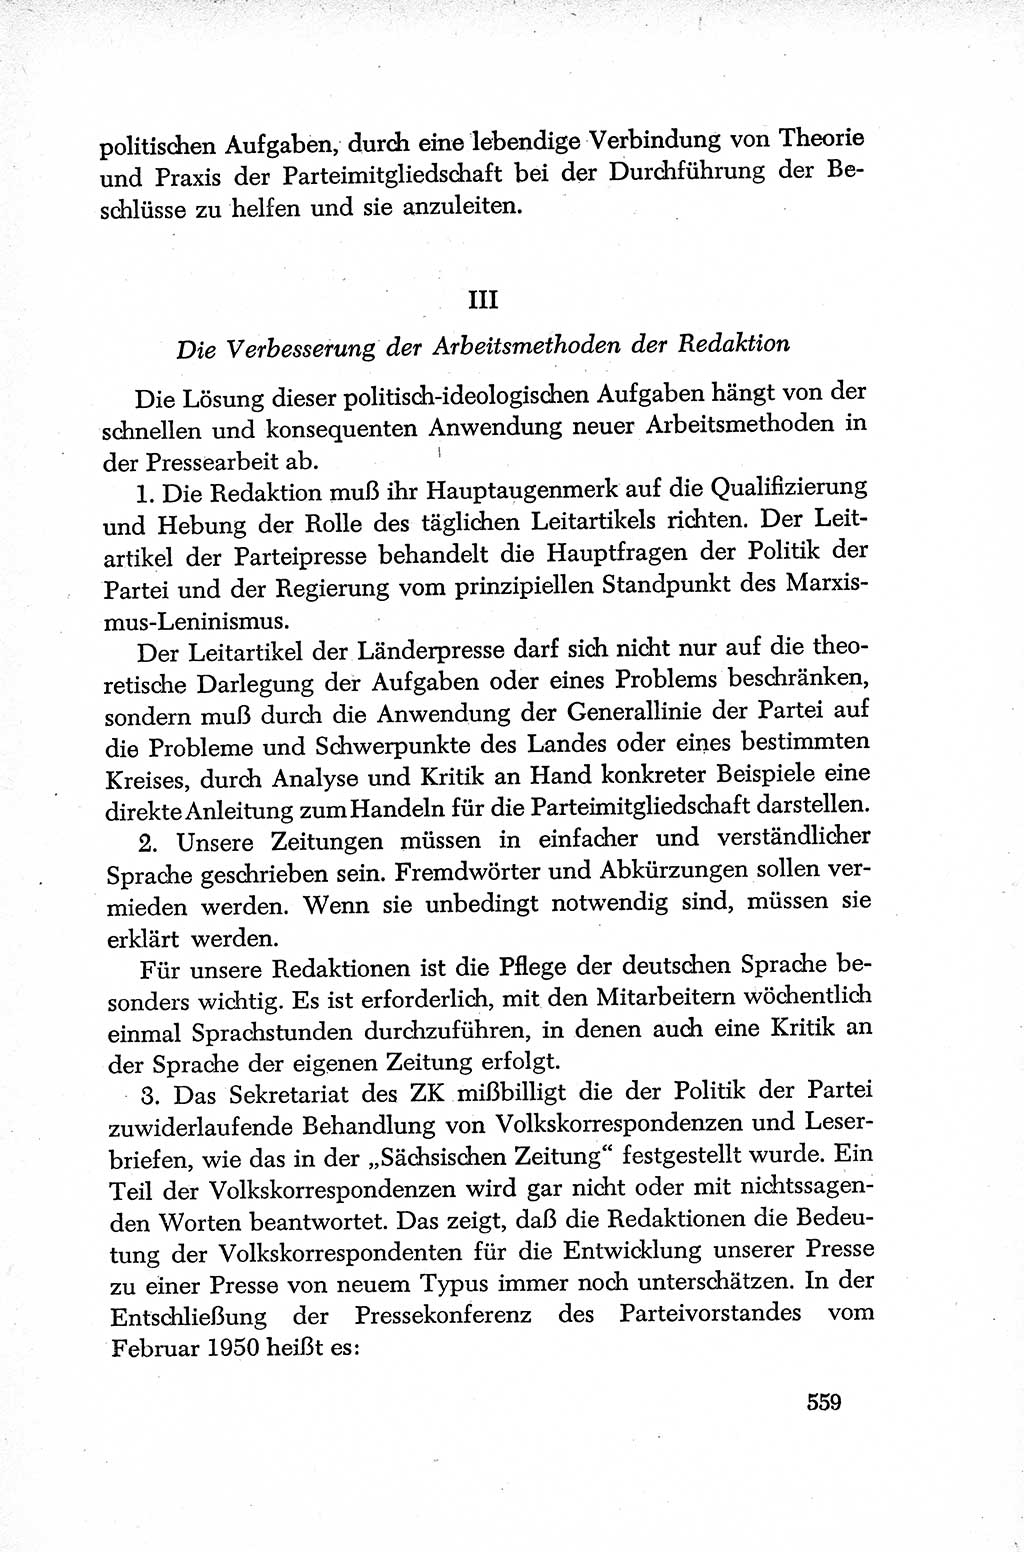 Dokumente der Sozialistischen Einheitspartei Deutschlands (SED) [Deutsche Demokratische Republik (DDR)] 1952-1953, Seite 559 (Dok. SED DDR 1952-1953, S. 559)